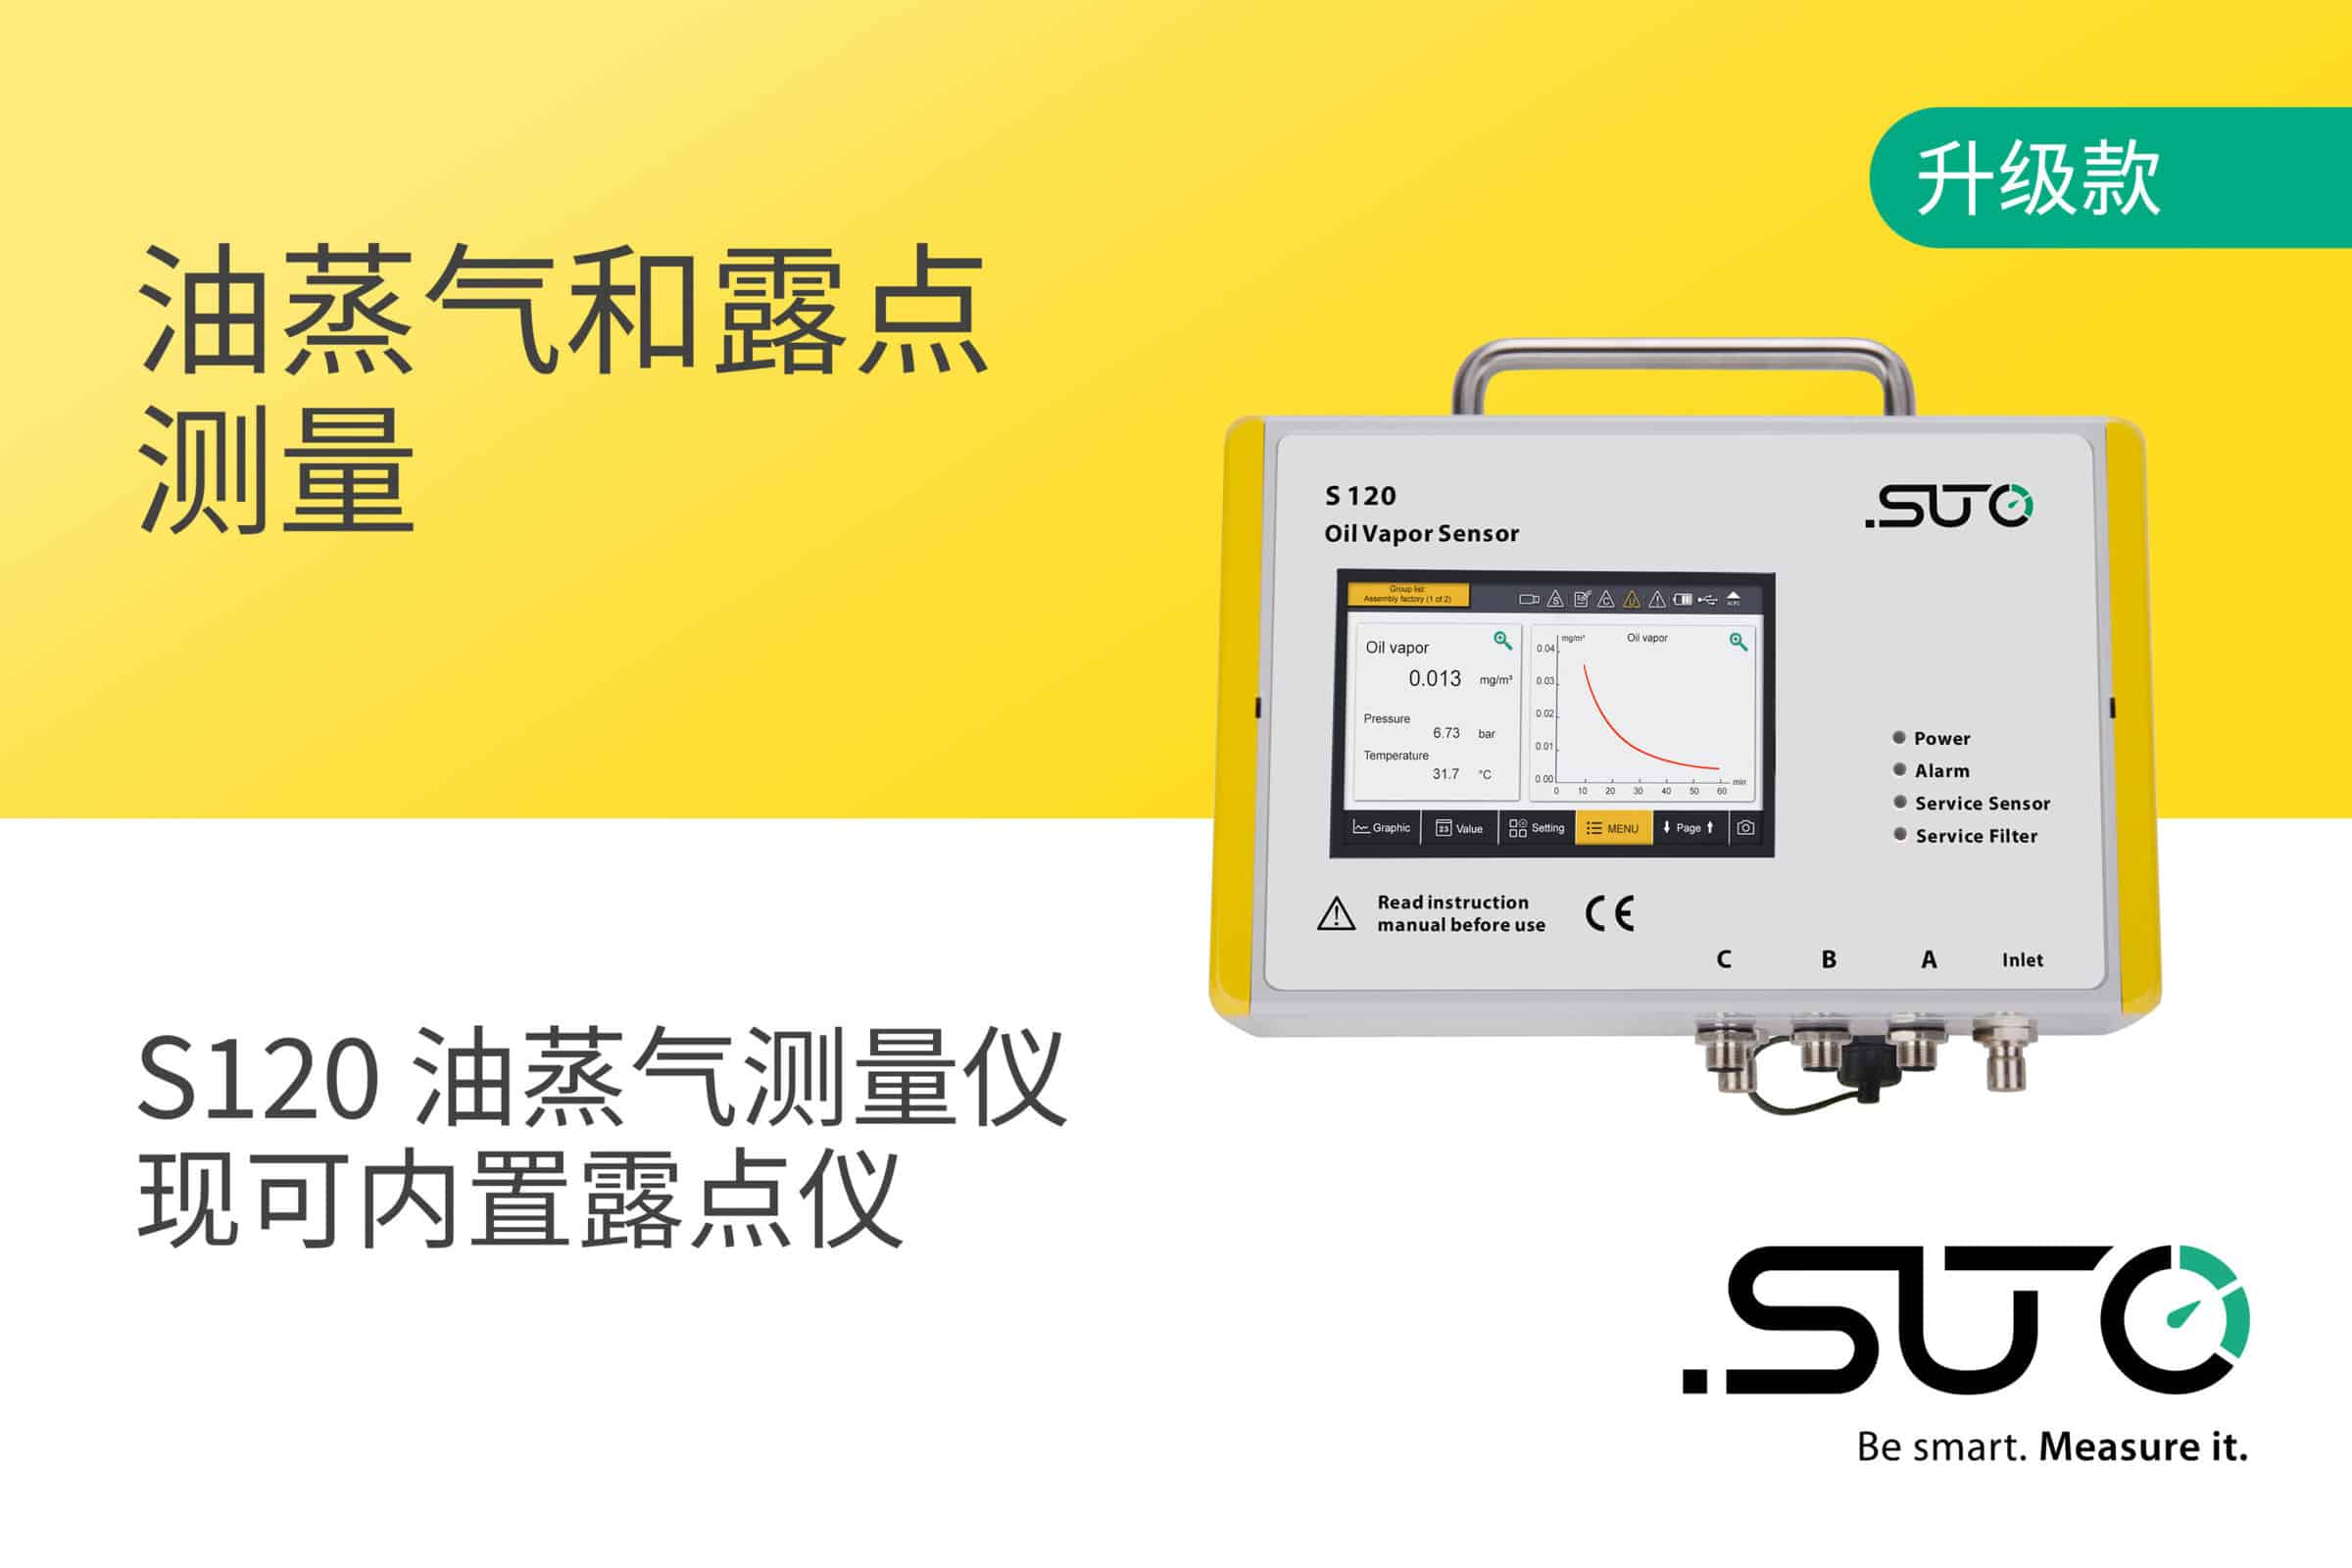 升级版S120油蒸气测量仪现可选内置测量范围-100 … +20 °C TD 的露点传感器